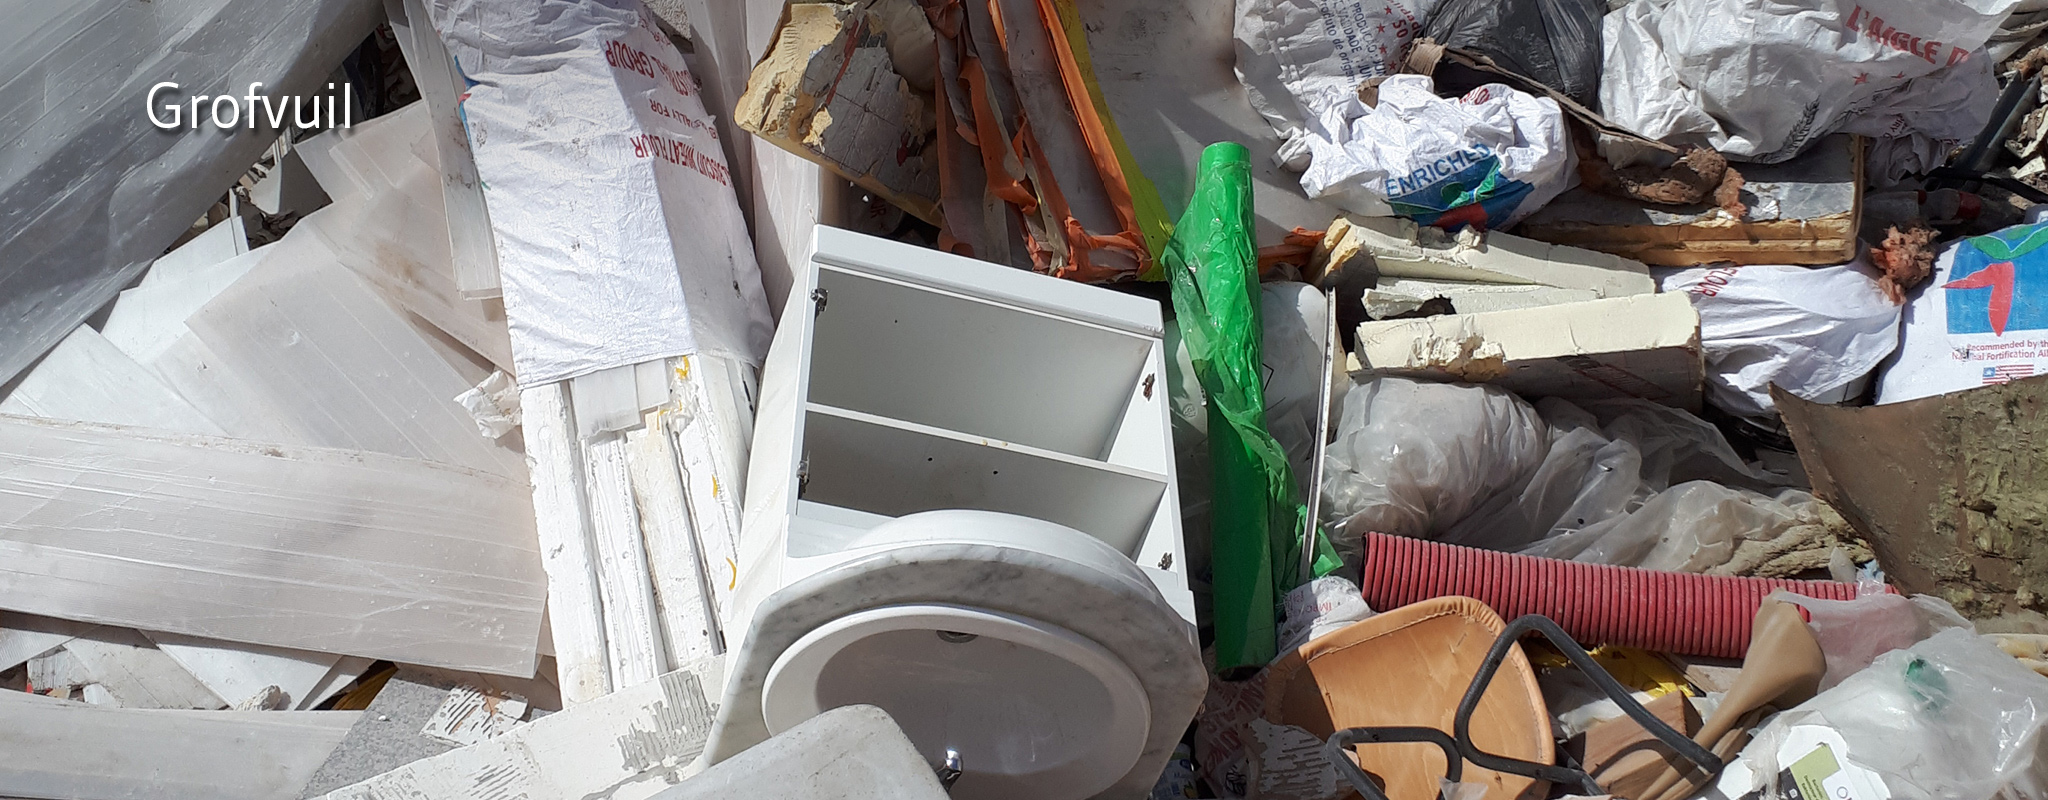 Kapotte meubelen, buizen, plastiek zakken gestort in containerpark